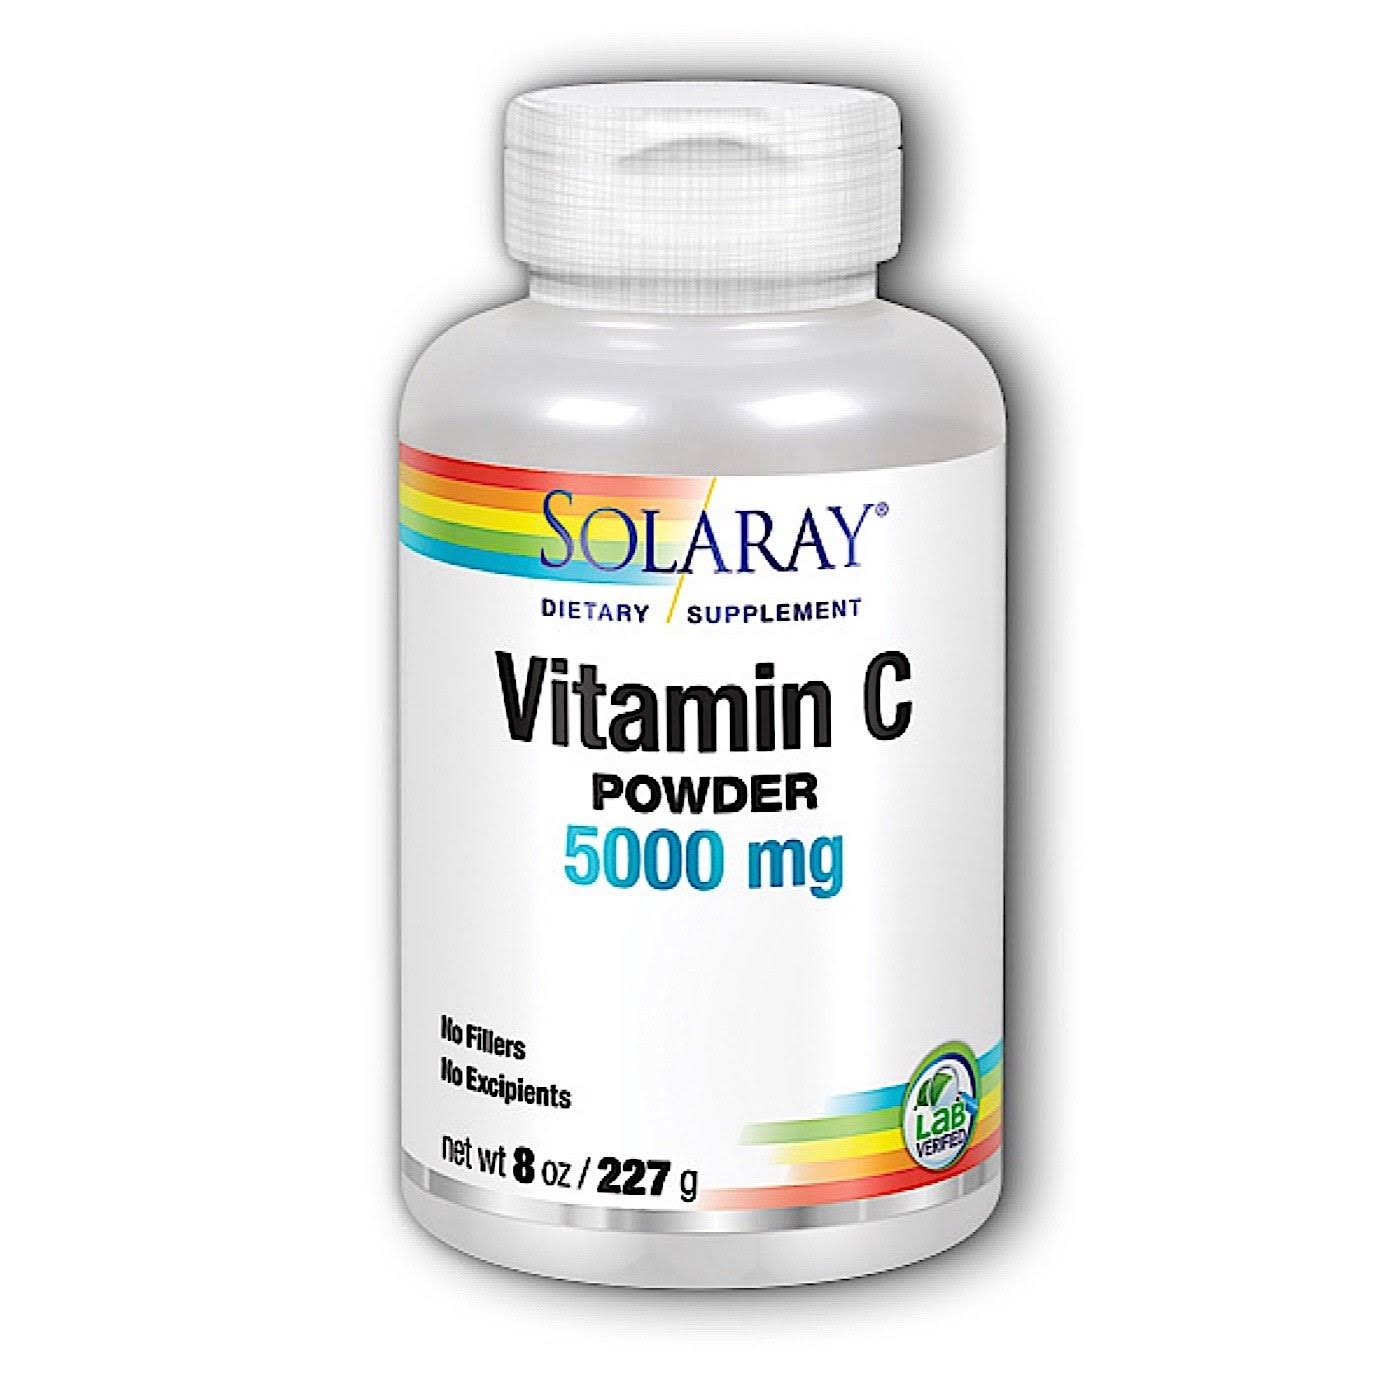 Solaray Vitamin C Powder - 5000mg, 227g